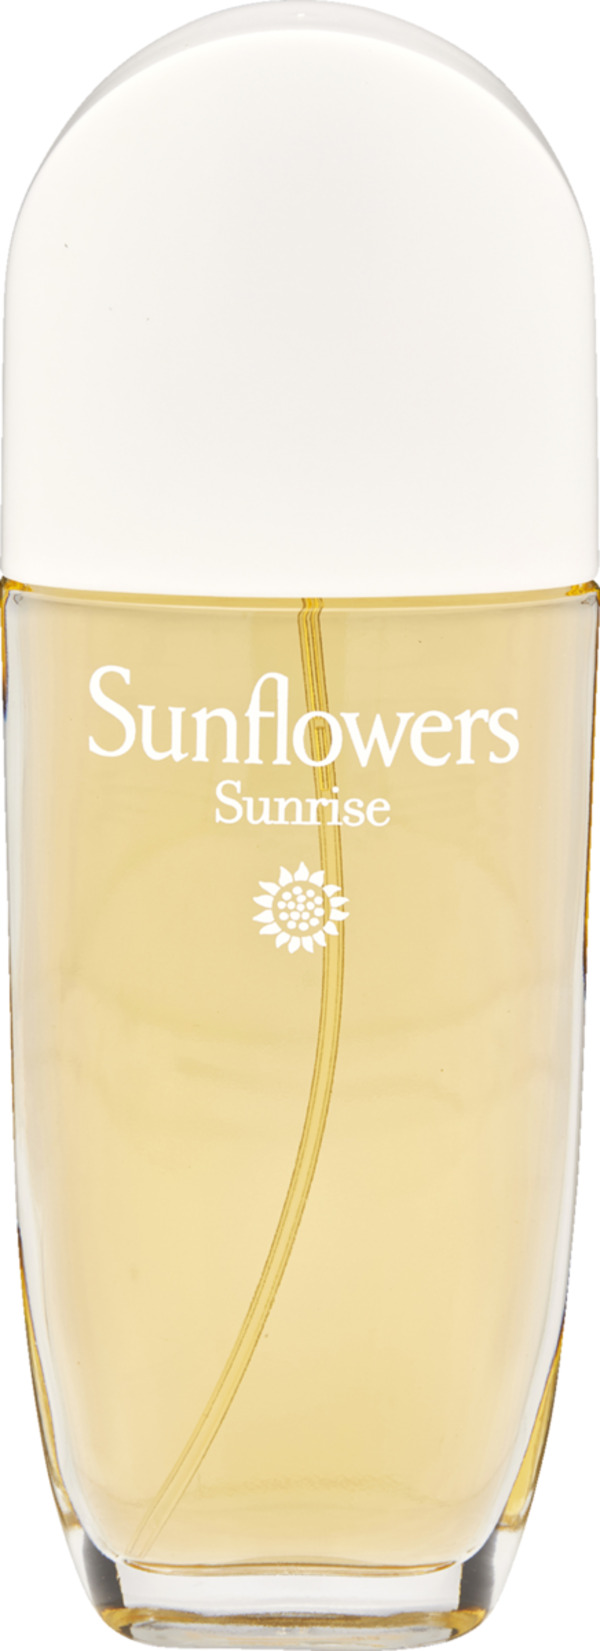 Bild 1 von Elizabeth Arden Sunflowers Sunrise for Her, EdT 100 ml